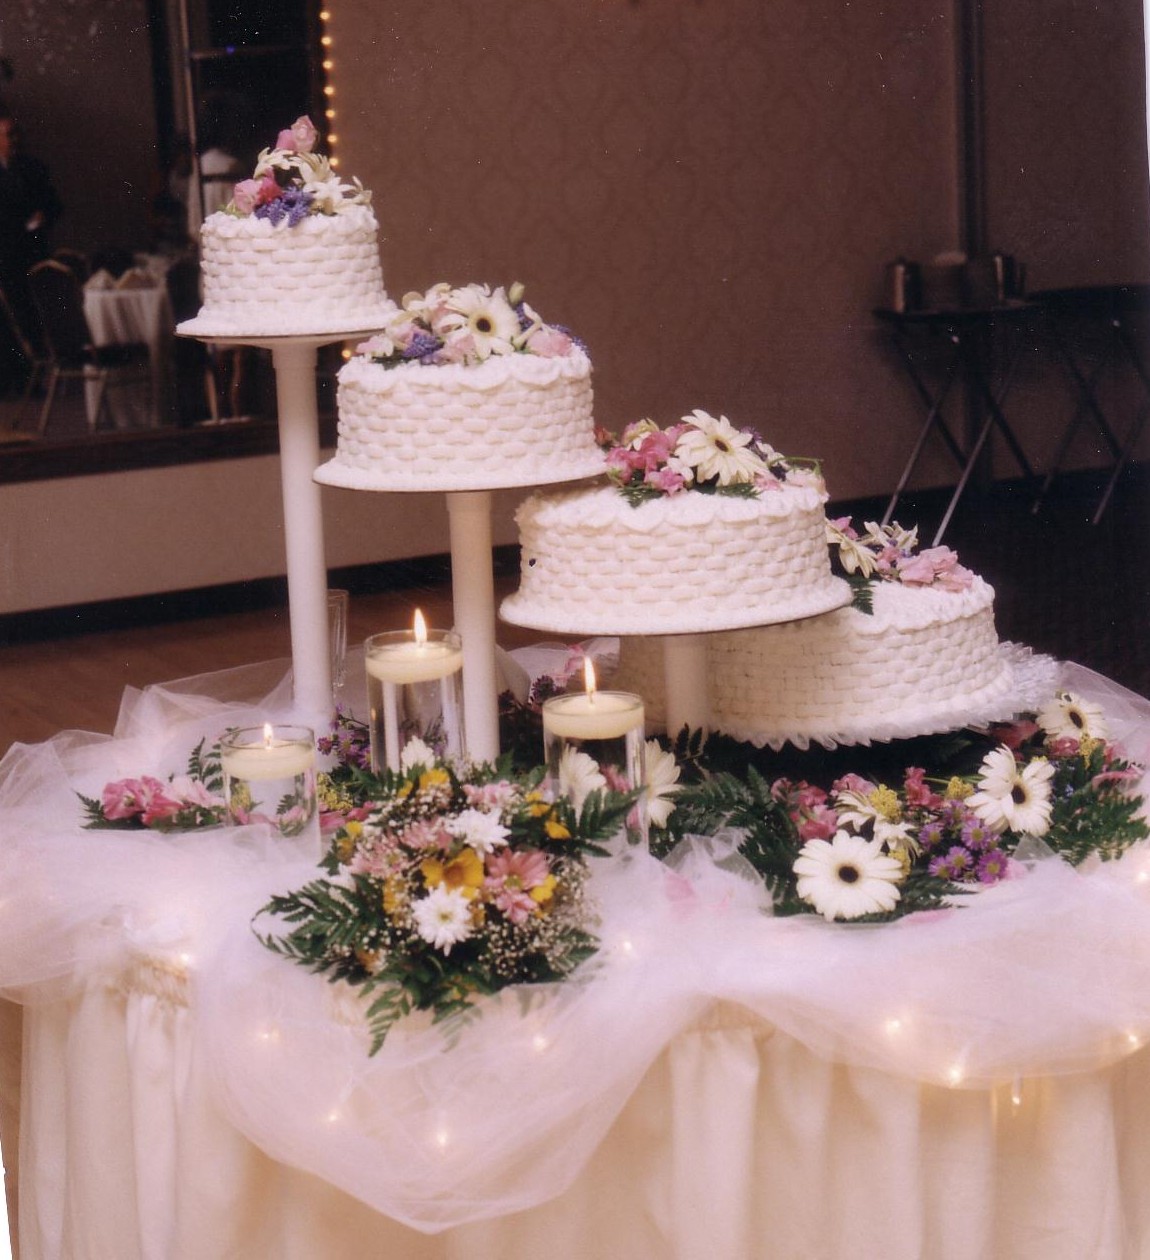 Bridge Wedding Cakes with Fountains